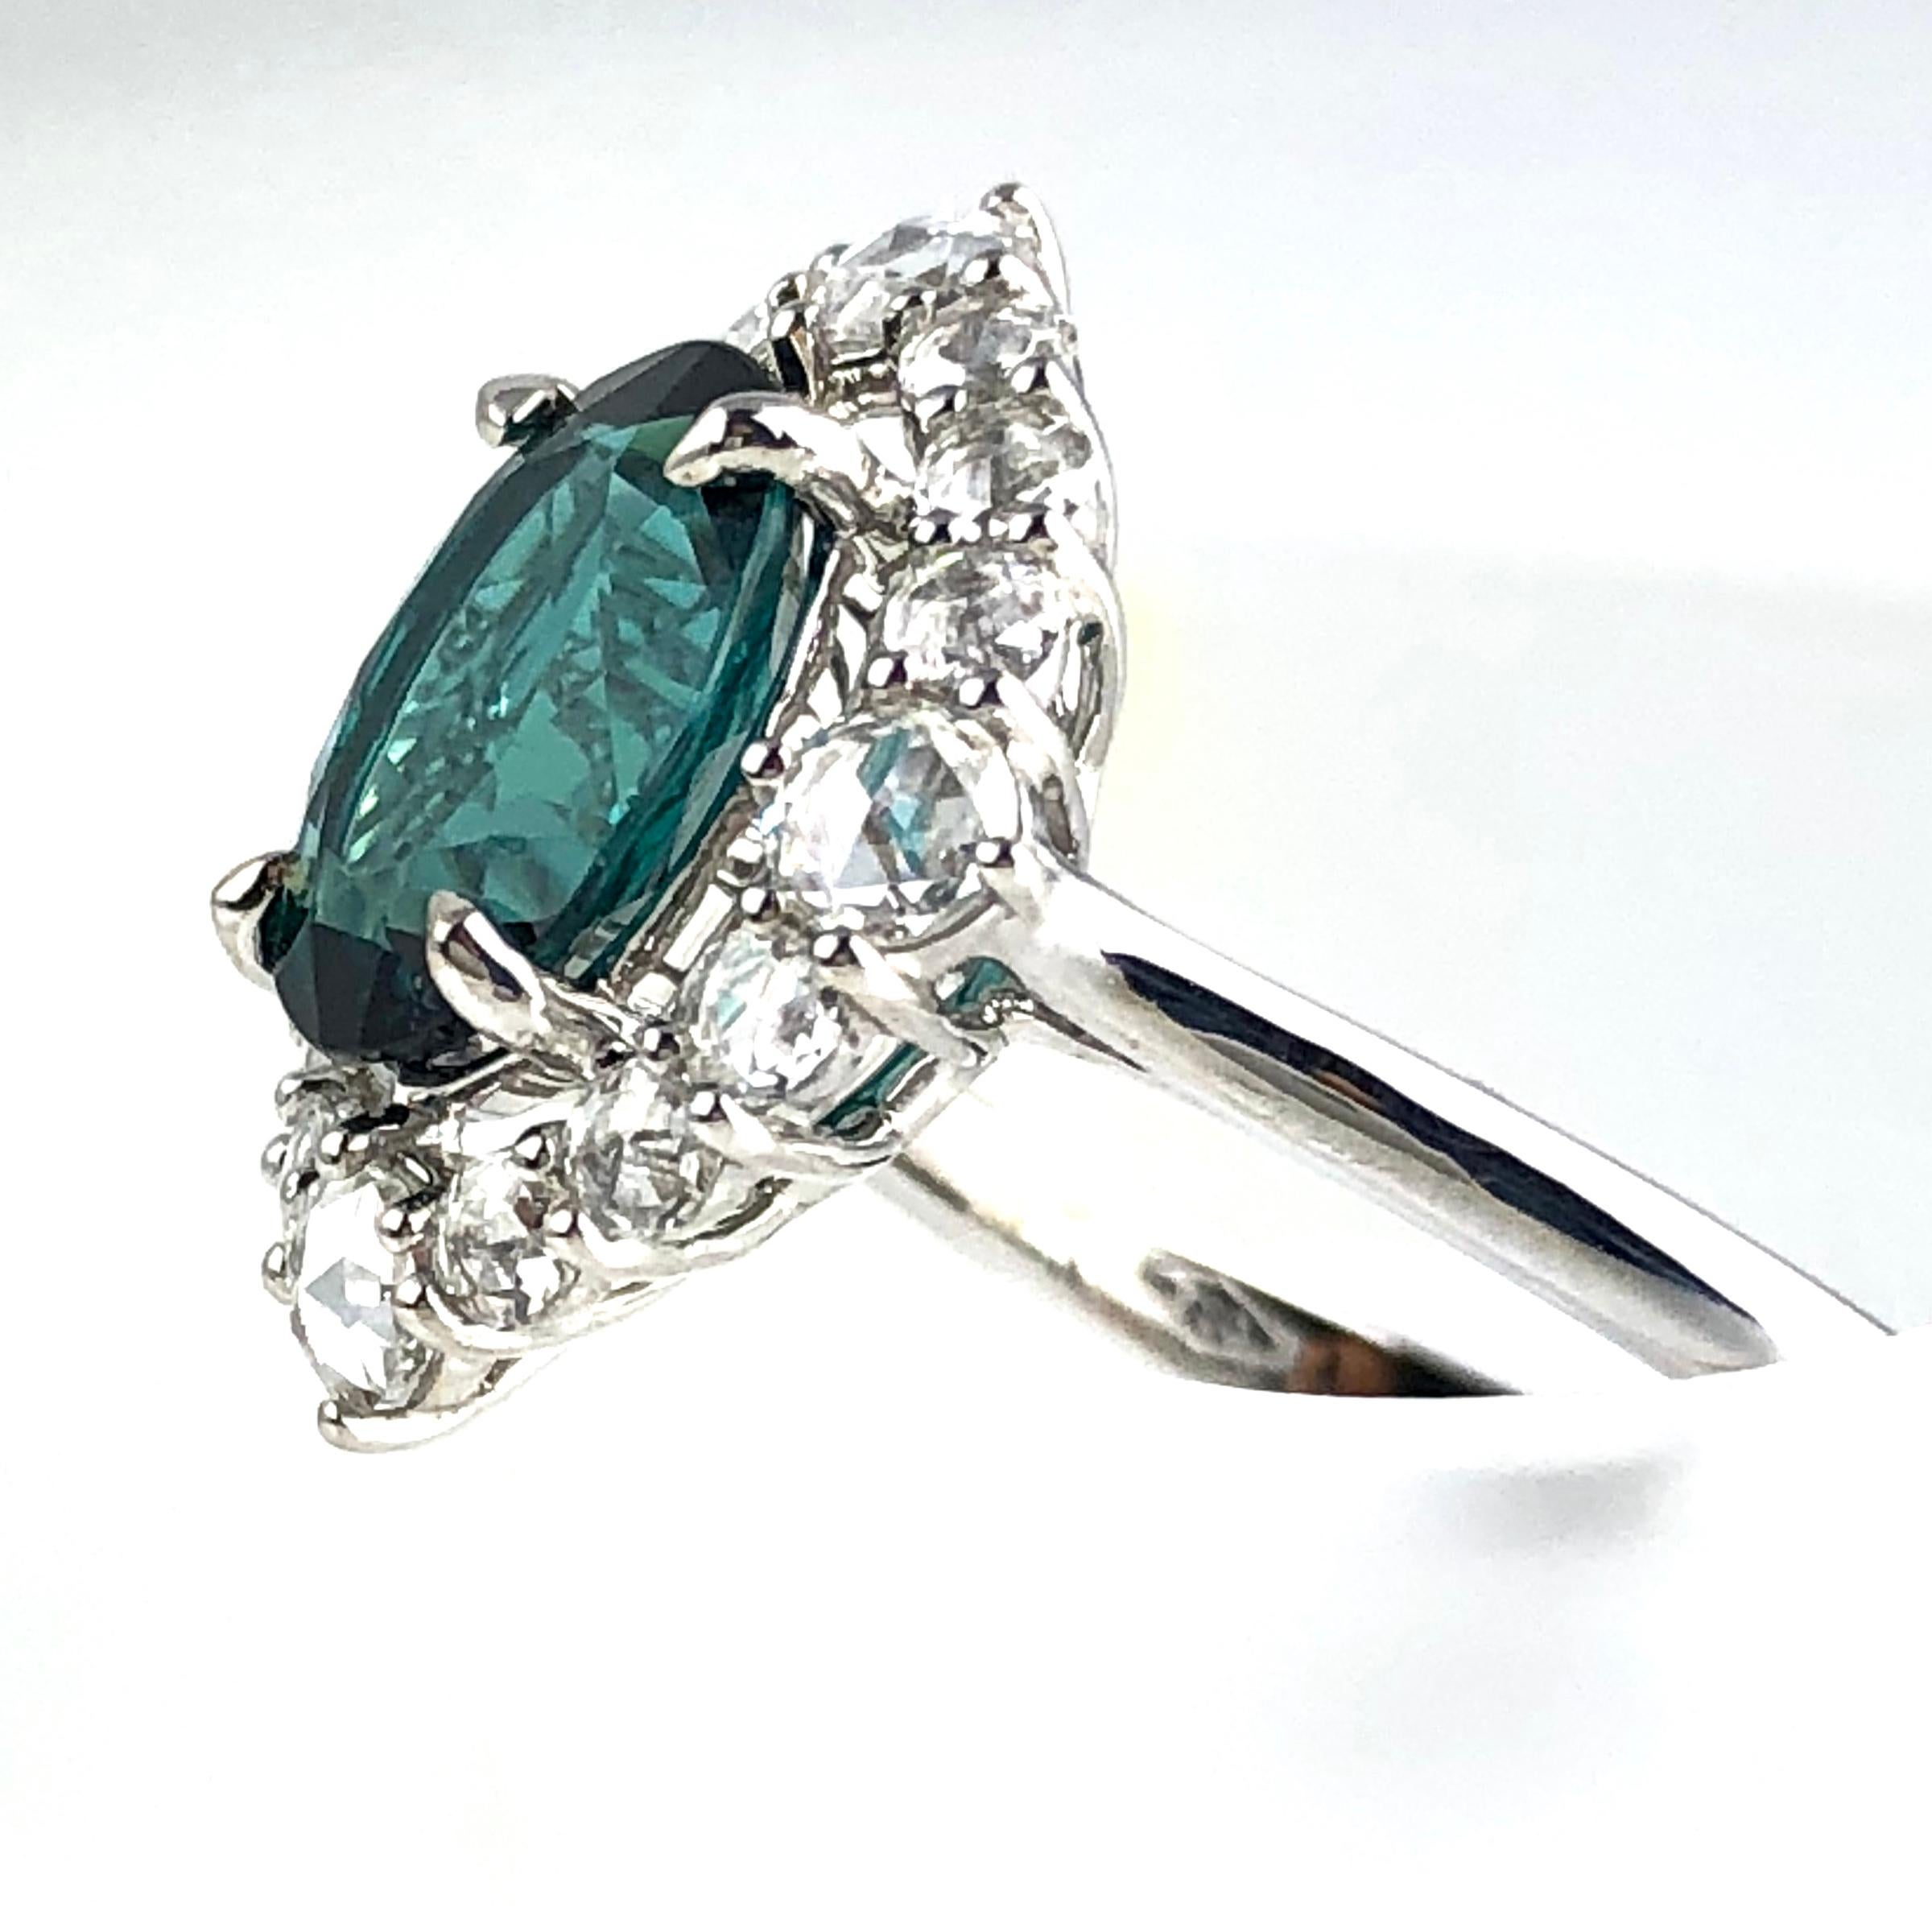 Eleganz trifft auf Extravaganz in diesem prächtigen Ring mit einem GIA-zertifizierten blaugrünen Turmalin von 1,81 Karat im Ovalschliff, der von 0,62 Karat schillernden weißen Diamanten umringt ist. Aus jedem Blickwinkel verströmt dieser Ring eine